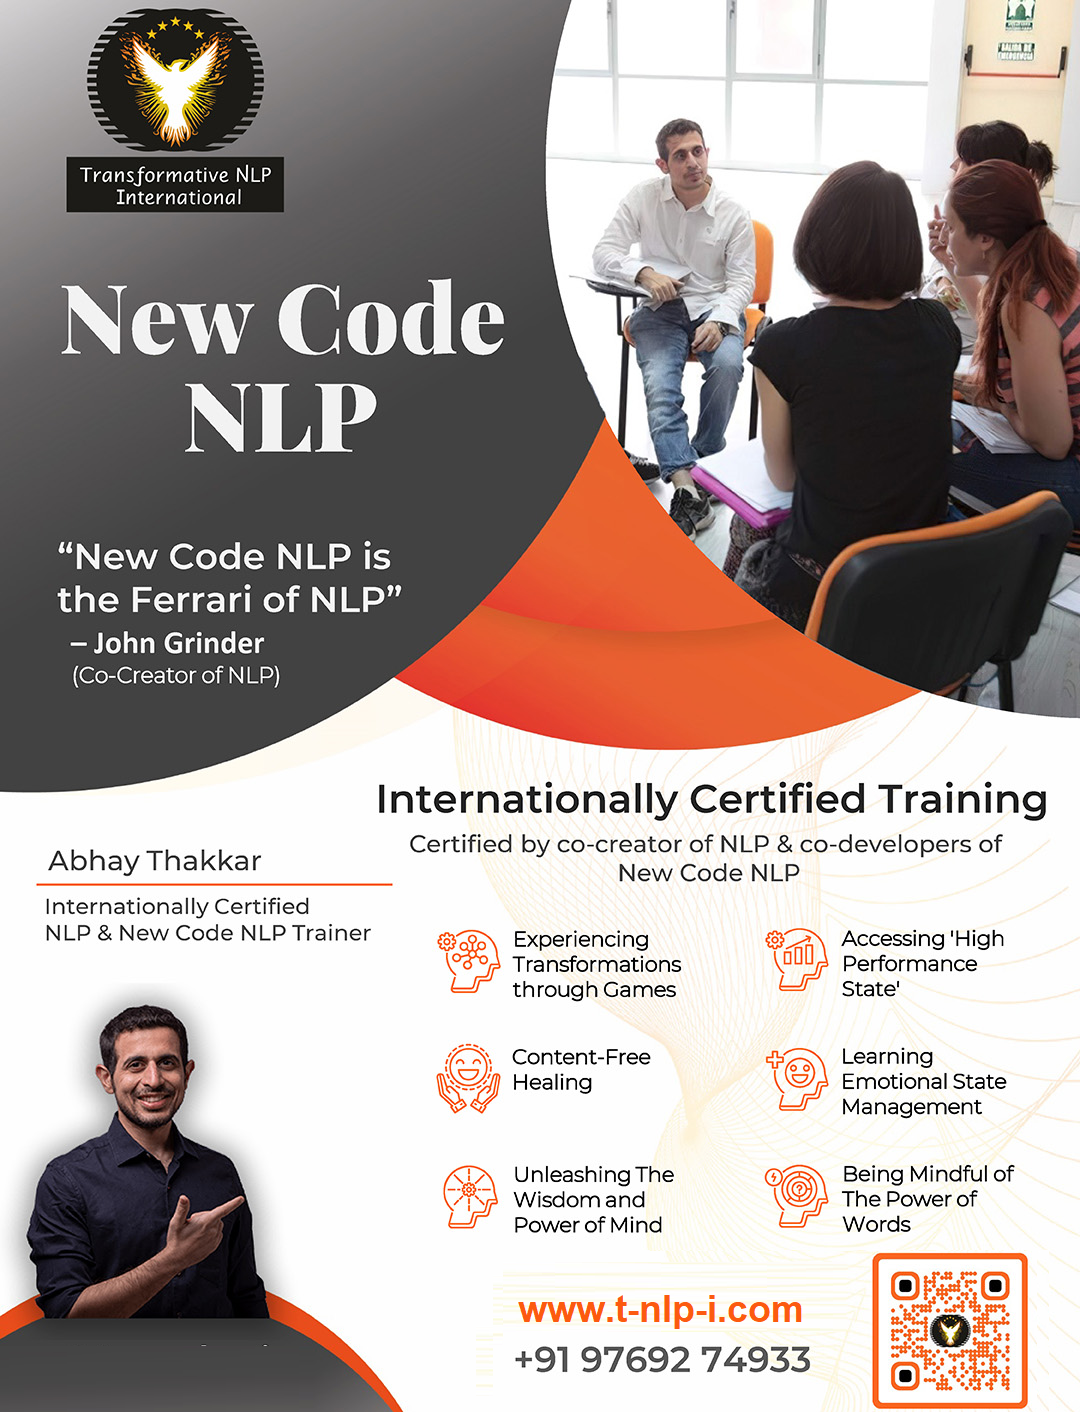 Internationally Certified New Code NLP Training by Abhay Thakkar - Mumbai